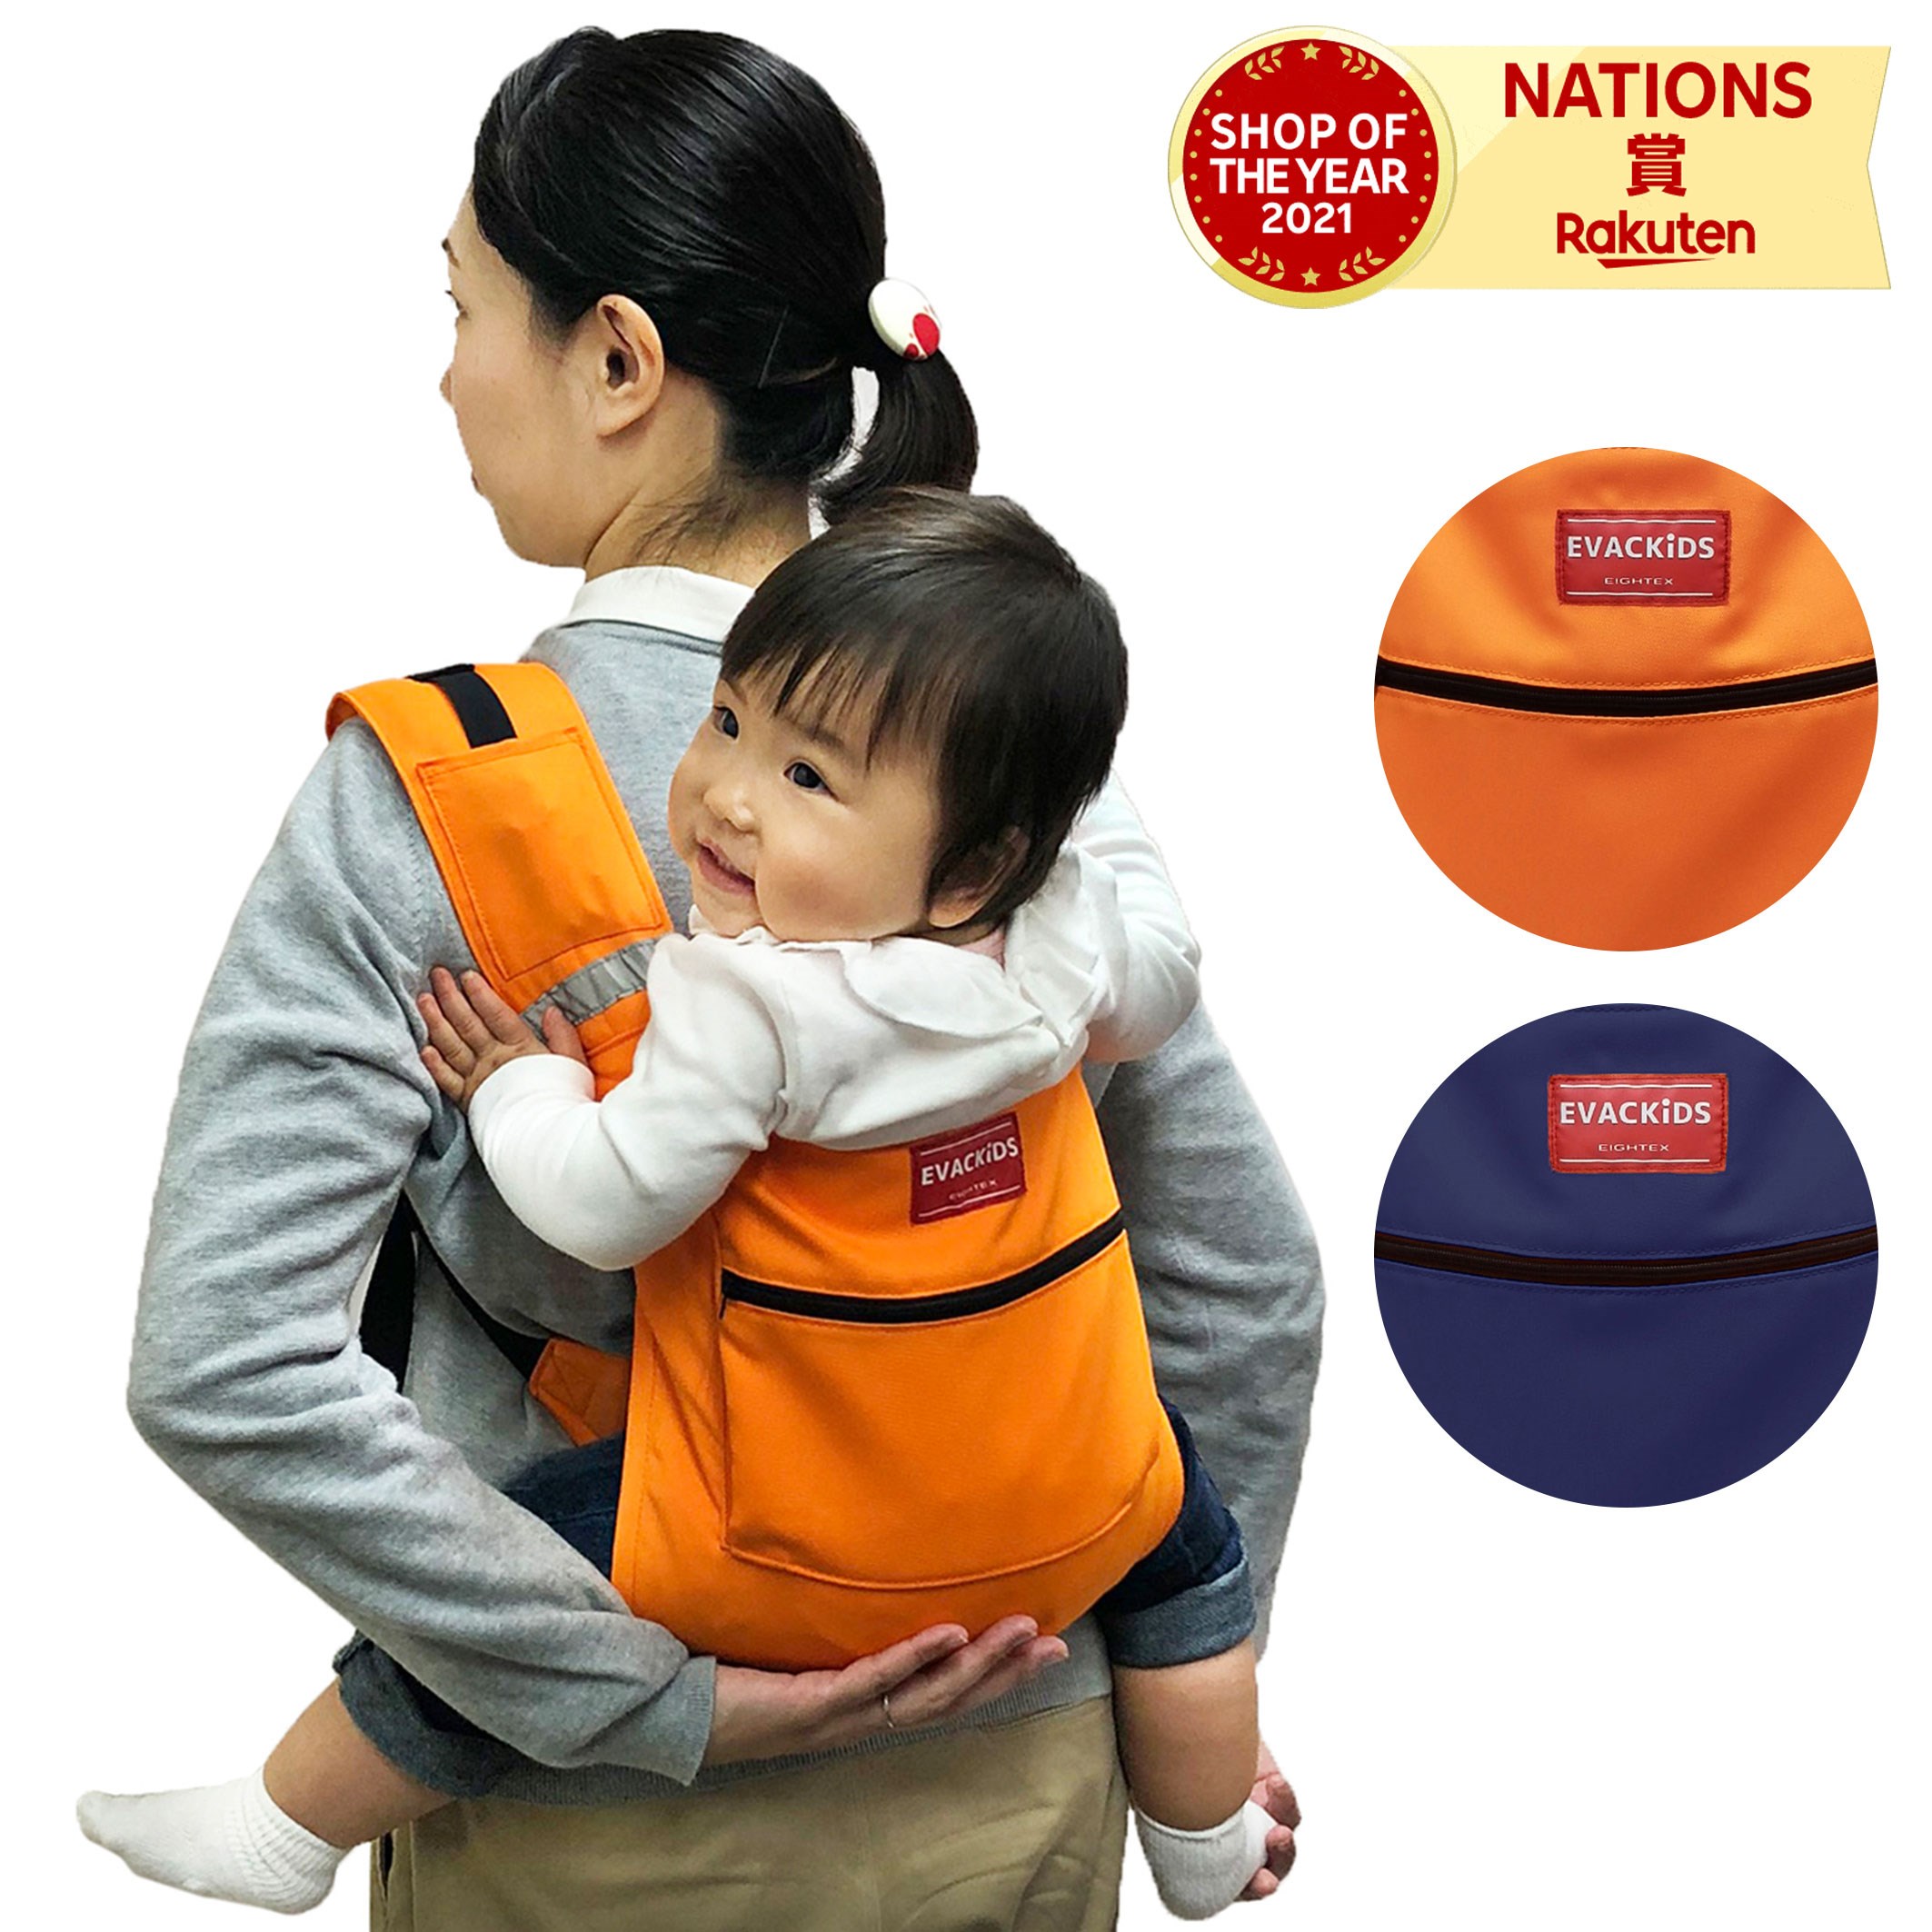 日本エイテックス 避難用コンパクトキャリー 簡易型キャリー 抱っこ紐 抱っこひも おんぶ紐 避難用キャリー 赤ちゃん ベビー 日本製 防災用品